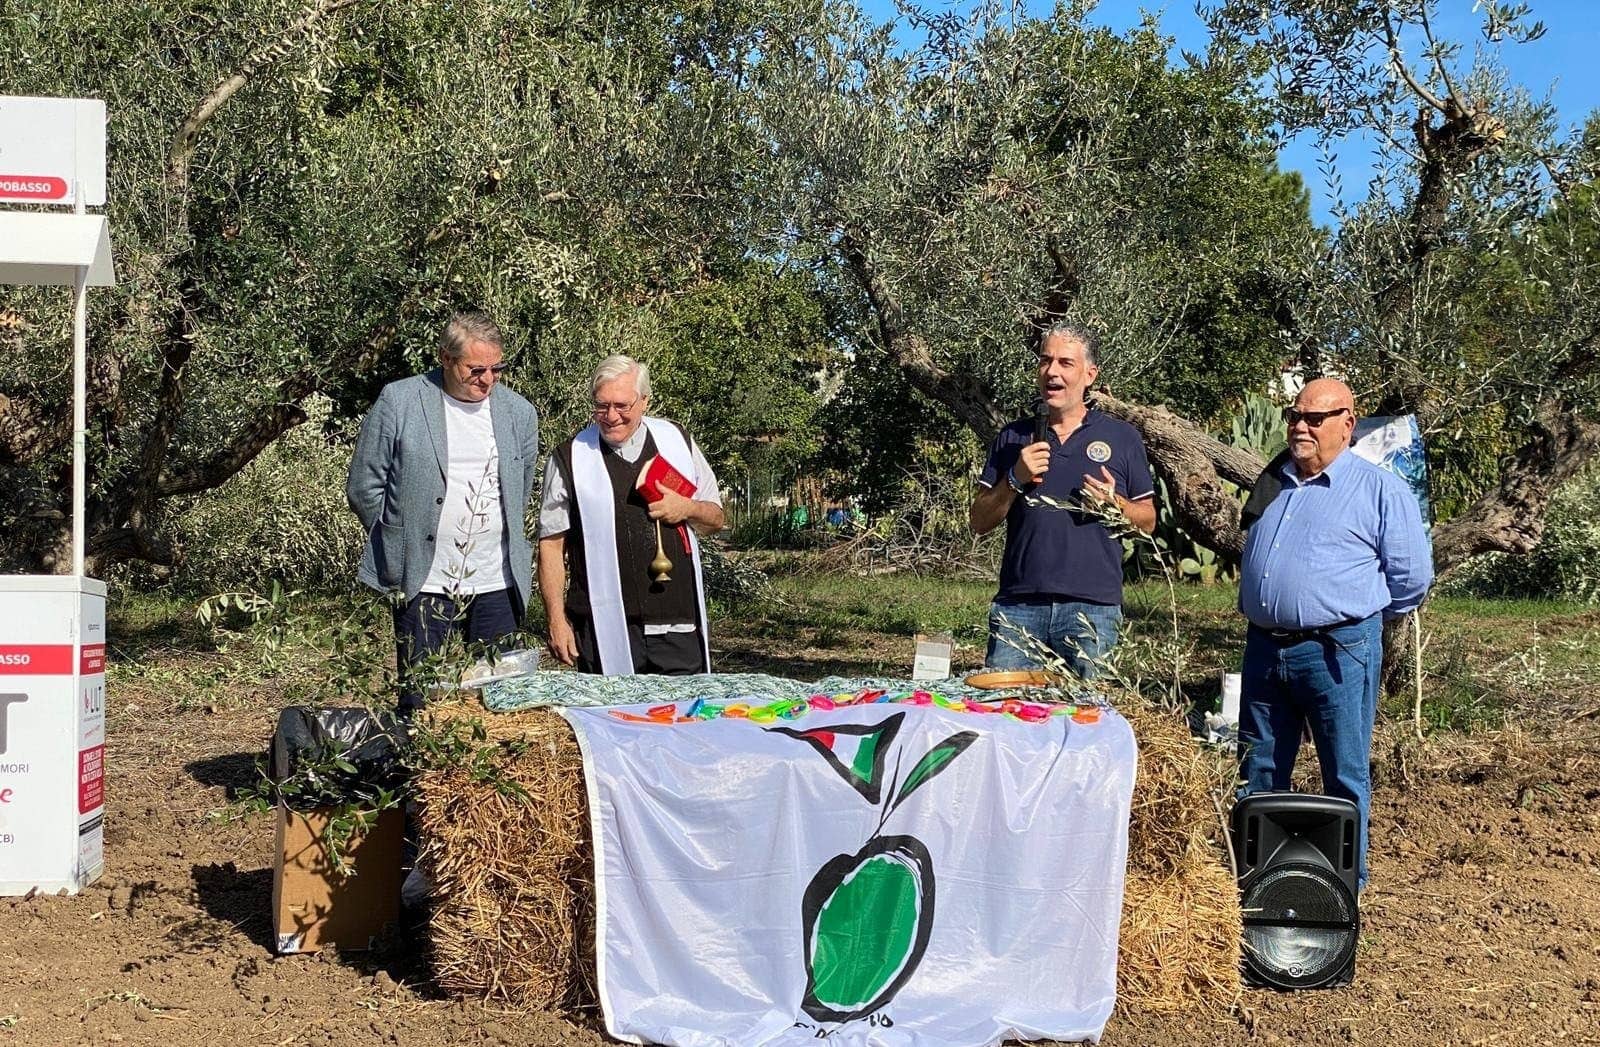 сводки-разновидности-новый-парк-в-молизе-продвигает-оливковое-дерево-биоразнообразие-социальное-включение-оливковое-масло-раз